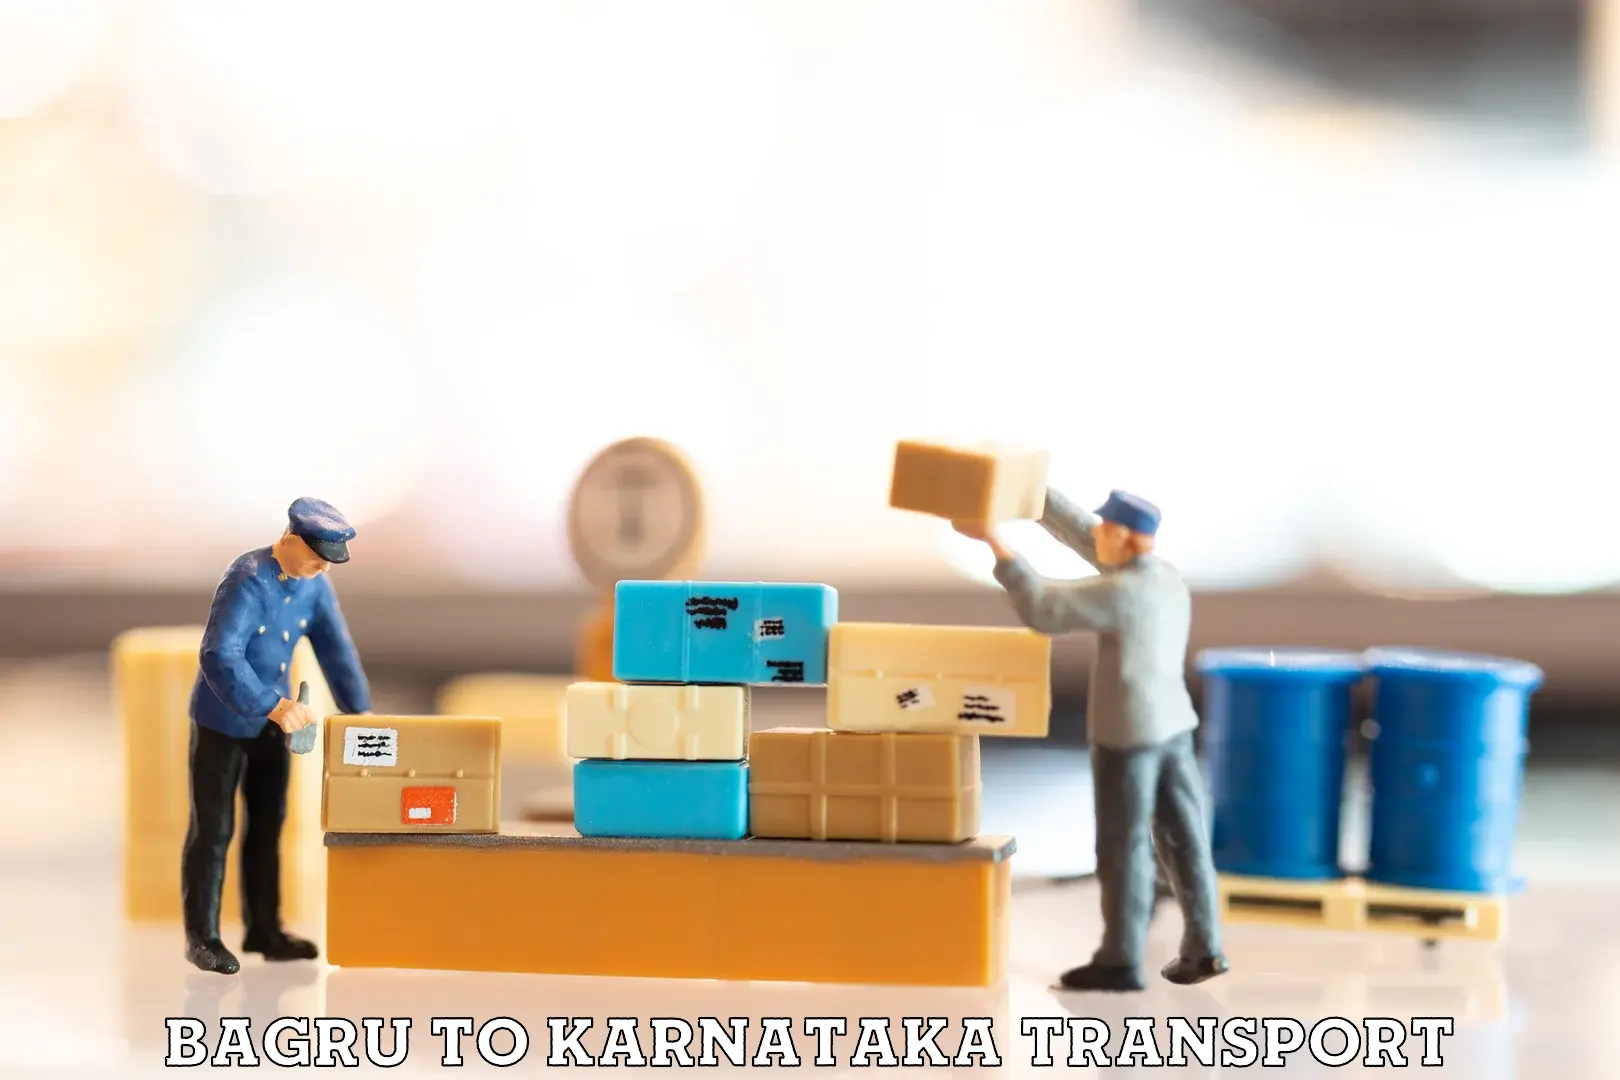 India truck logistics services in Bagru to Karnataka